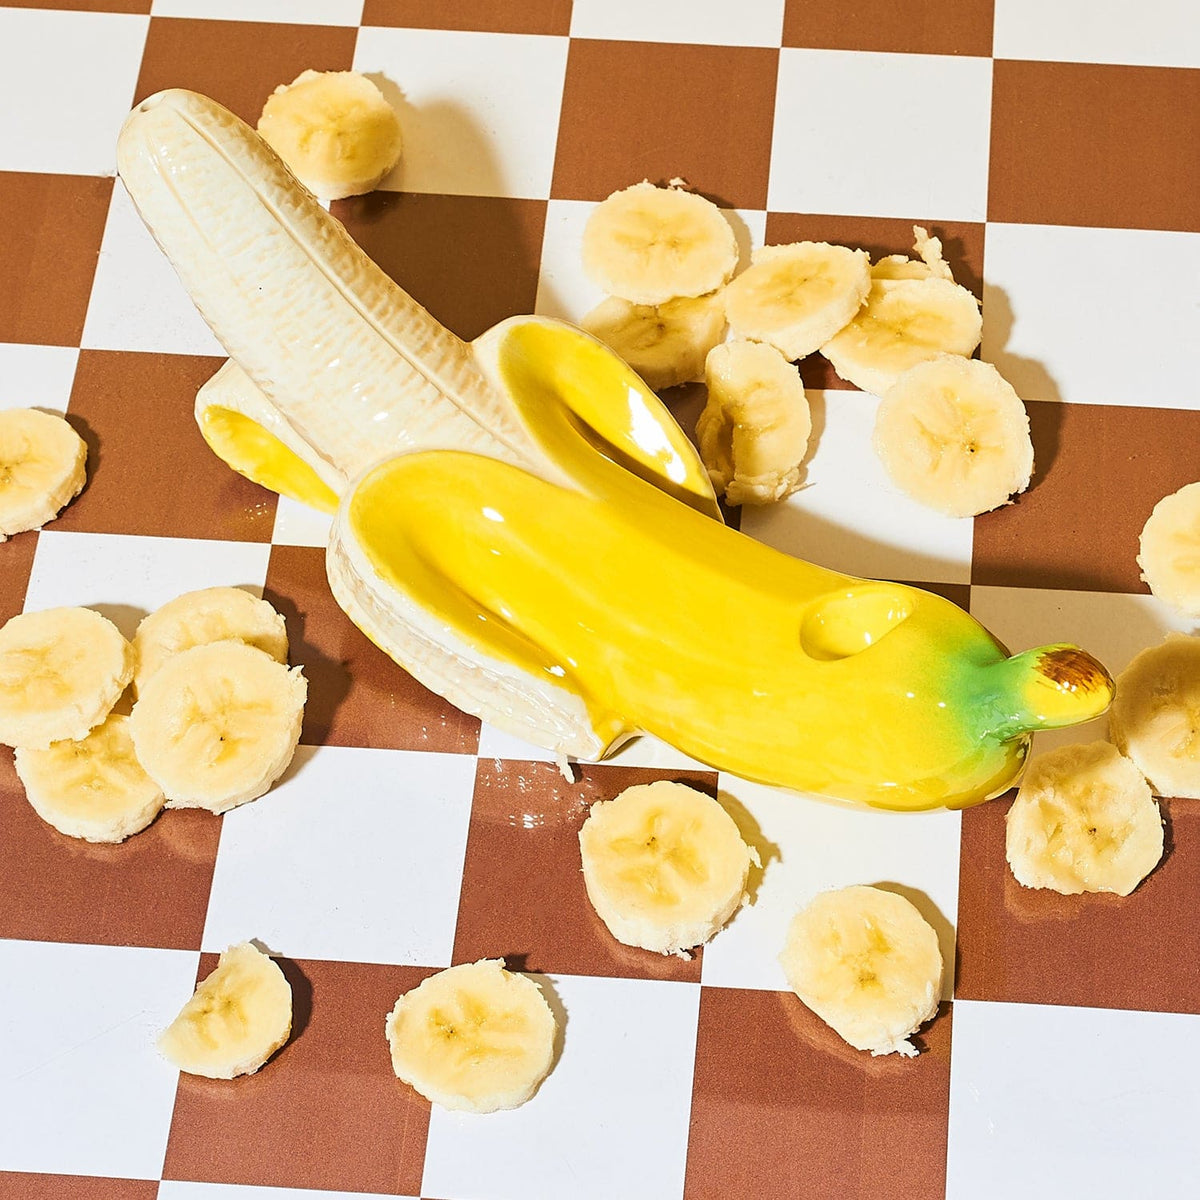 Peeled Banana Pipe 82552 0323 - Q123